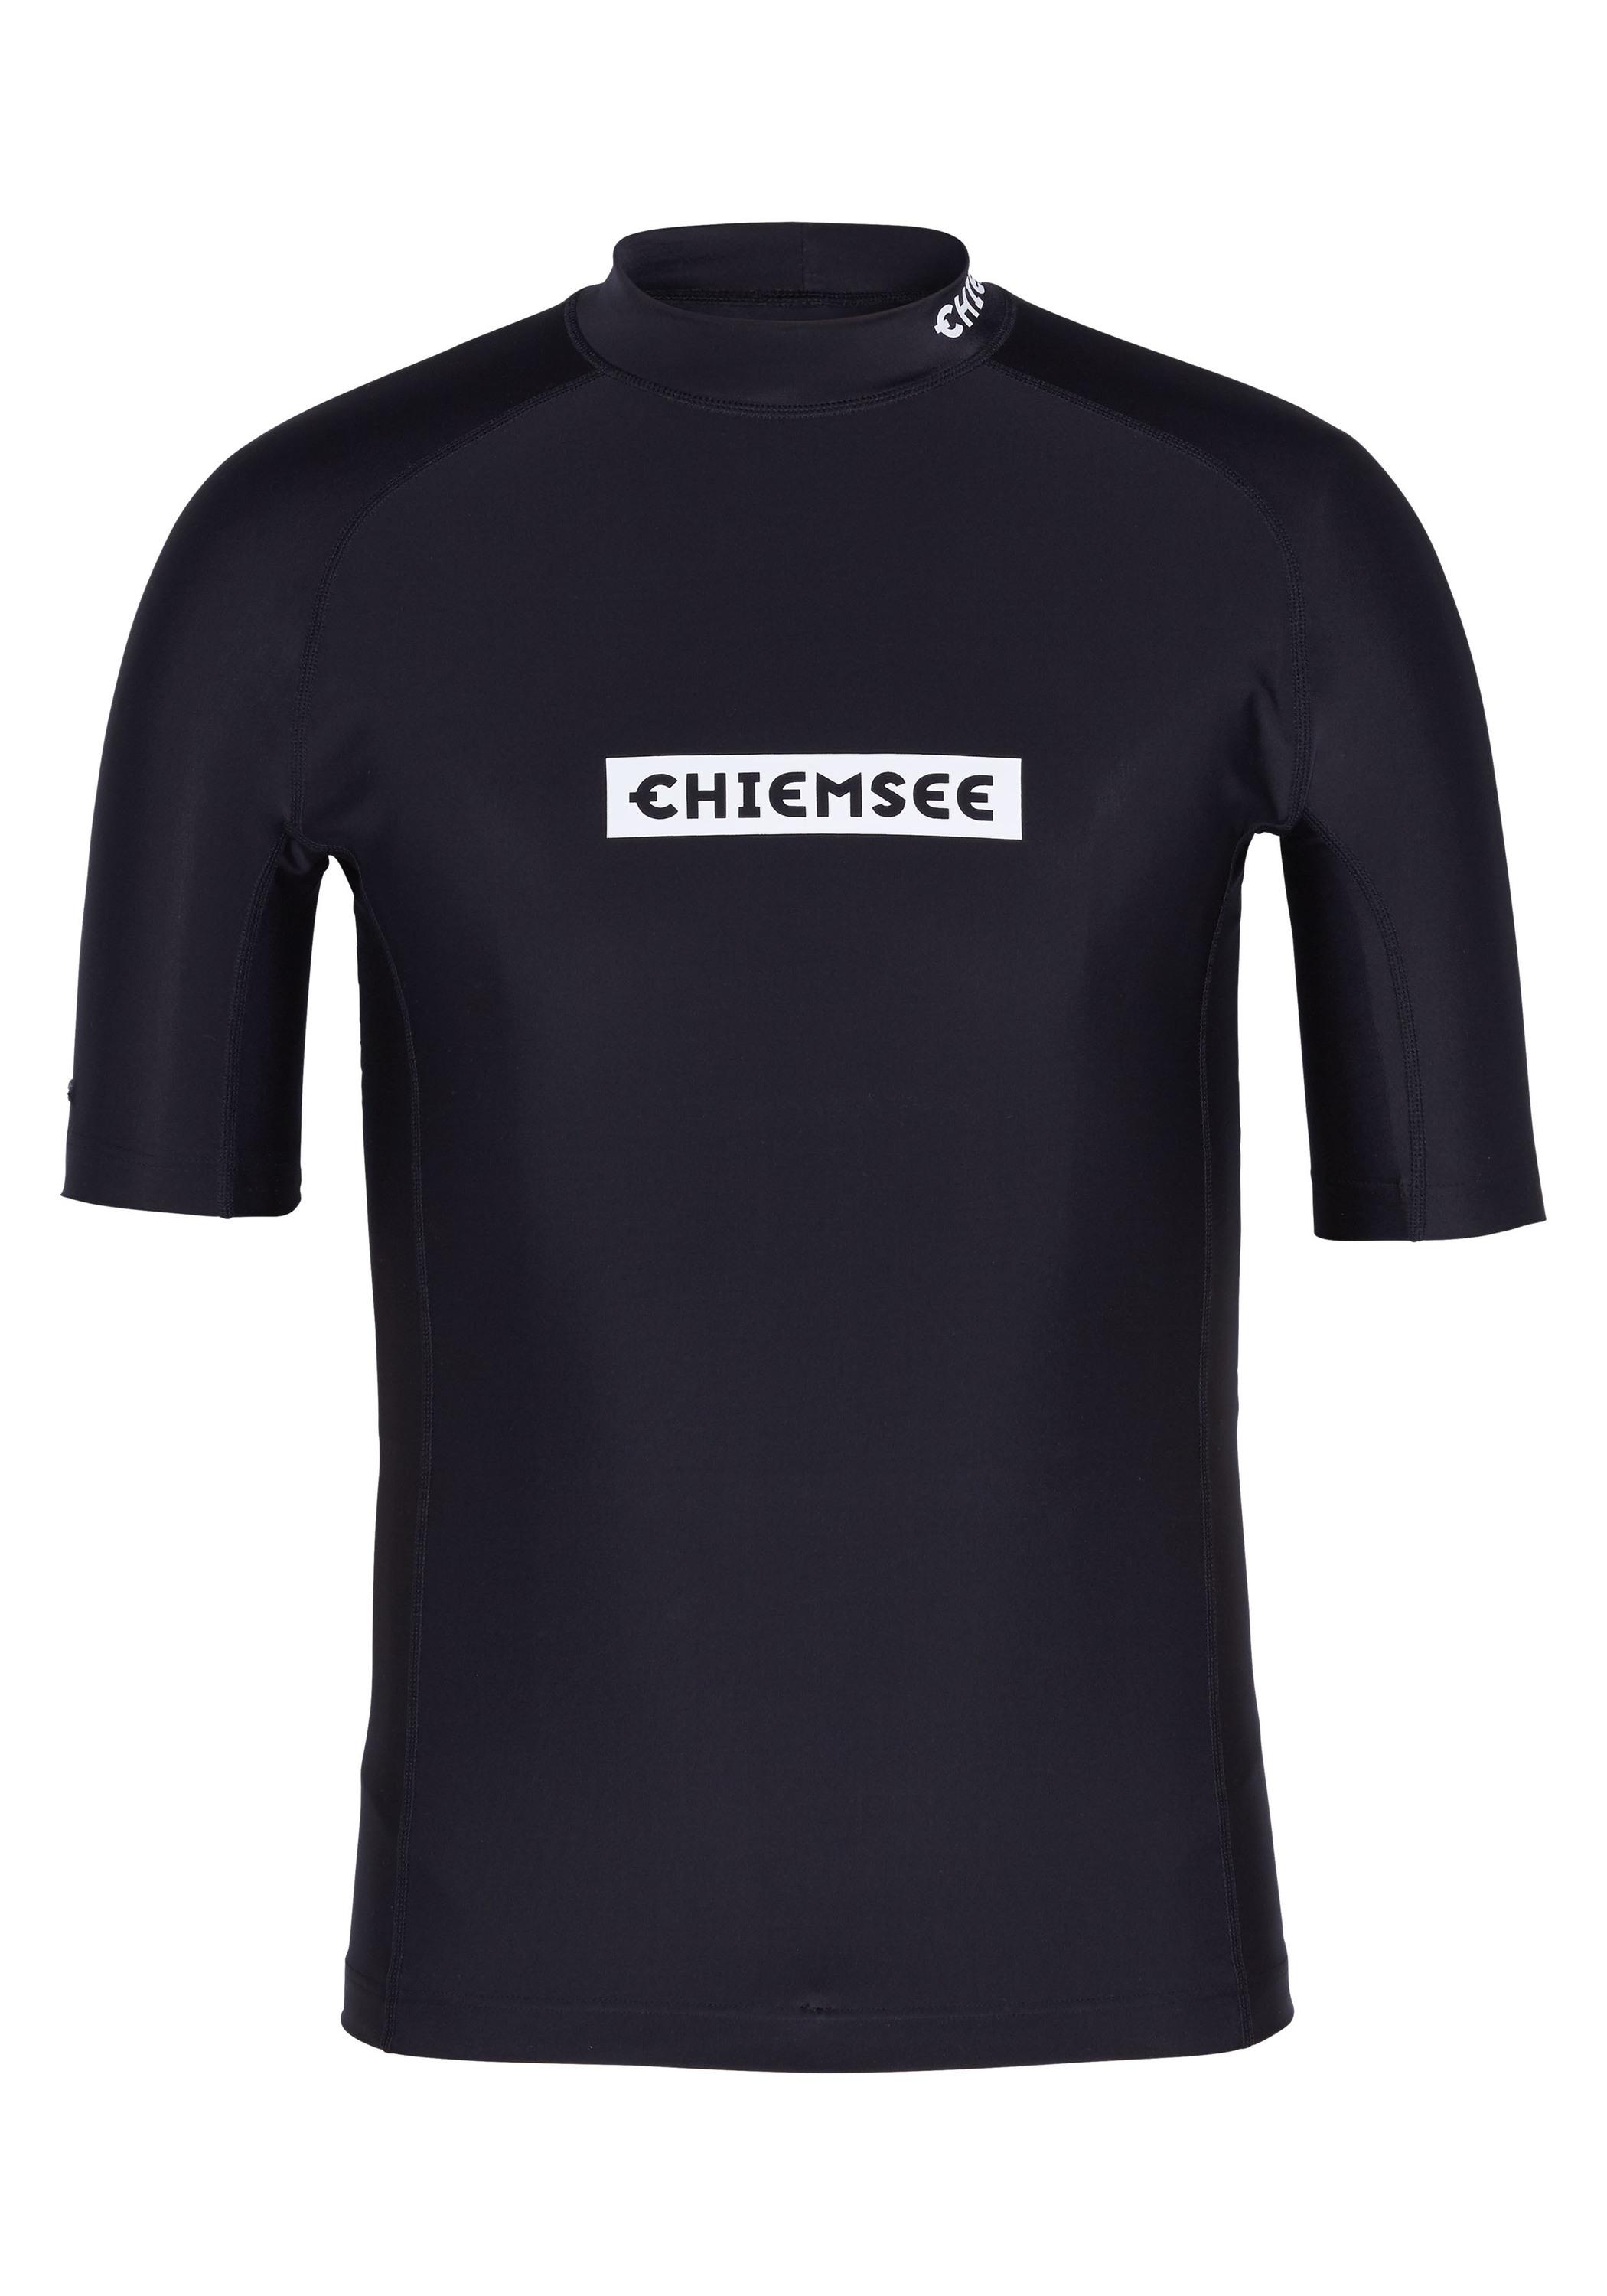 Chiemsee Badeshirt Surf Shirt SportScheck kaufen Deep von Black Shop im Online new